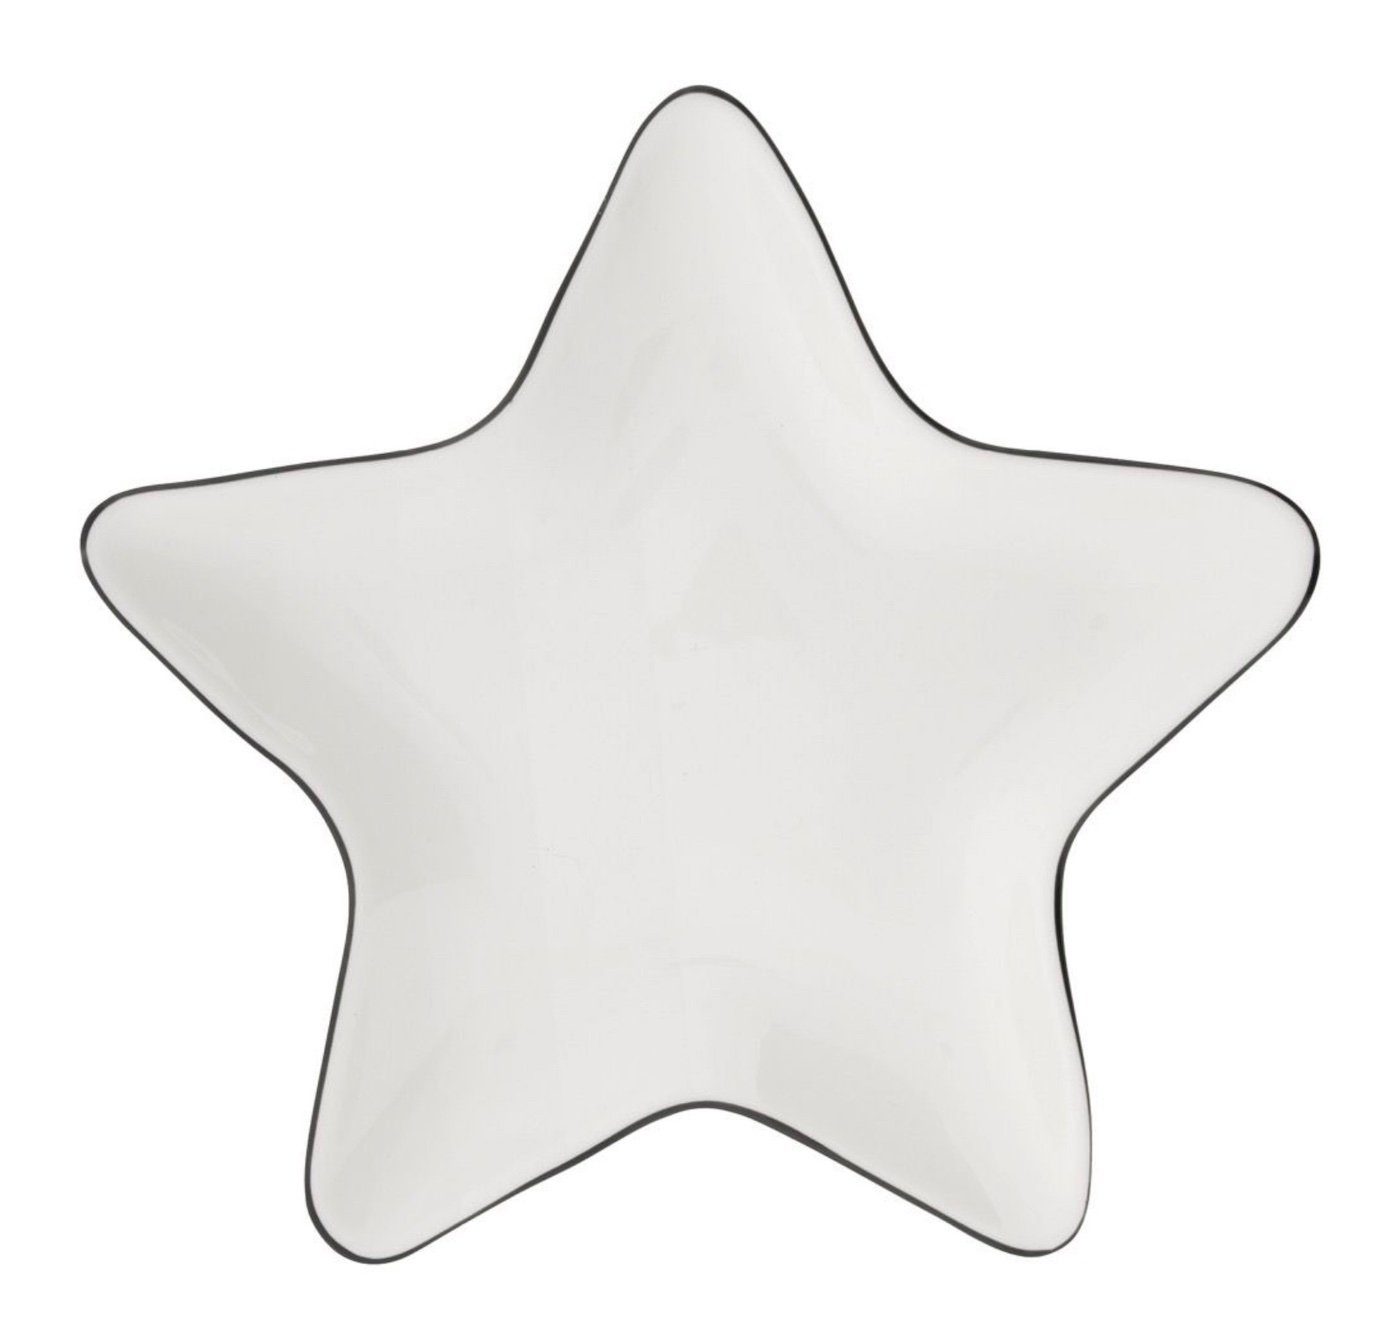 Star Collections Dekoteller Bastion handbemalt schwarz 18x18cm, Teller Keramik weiß